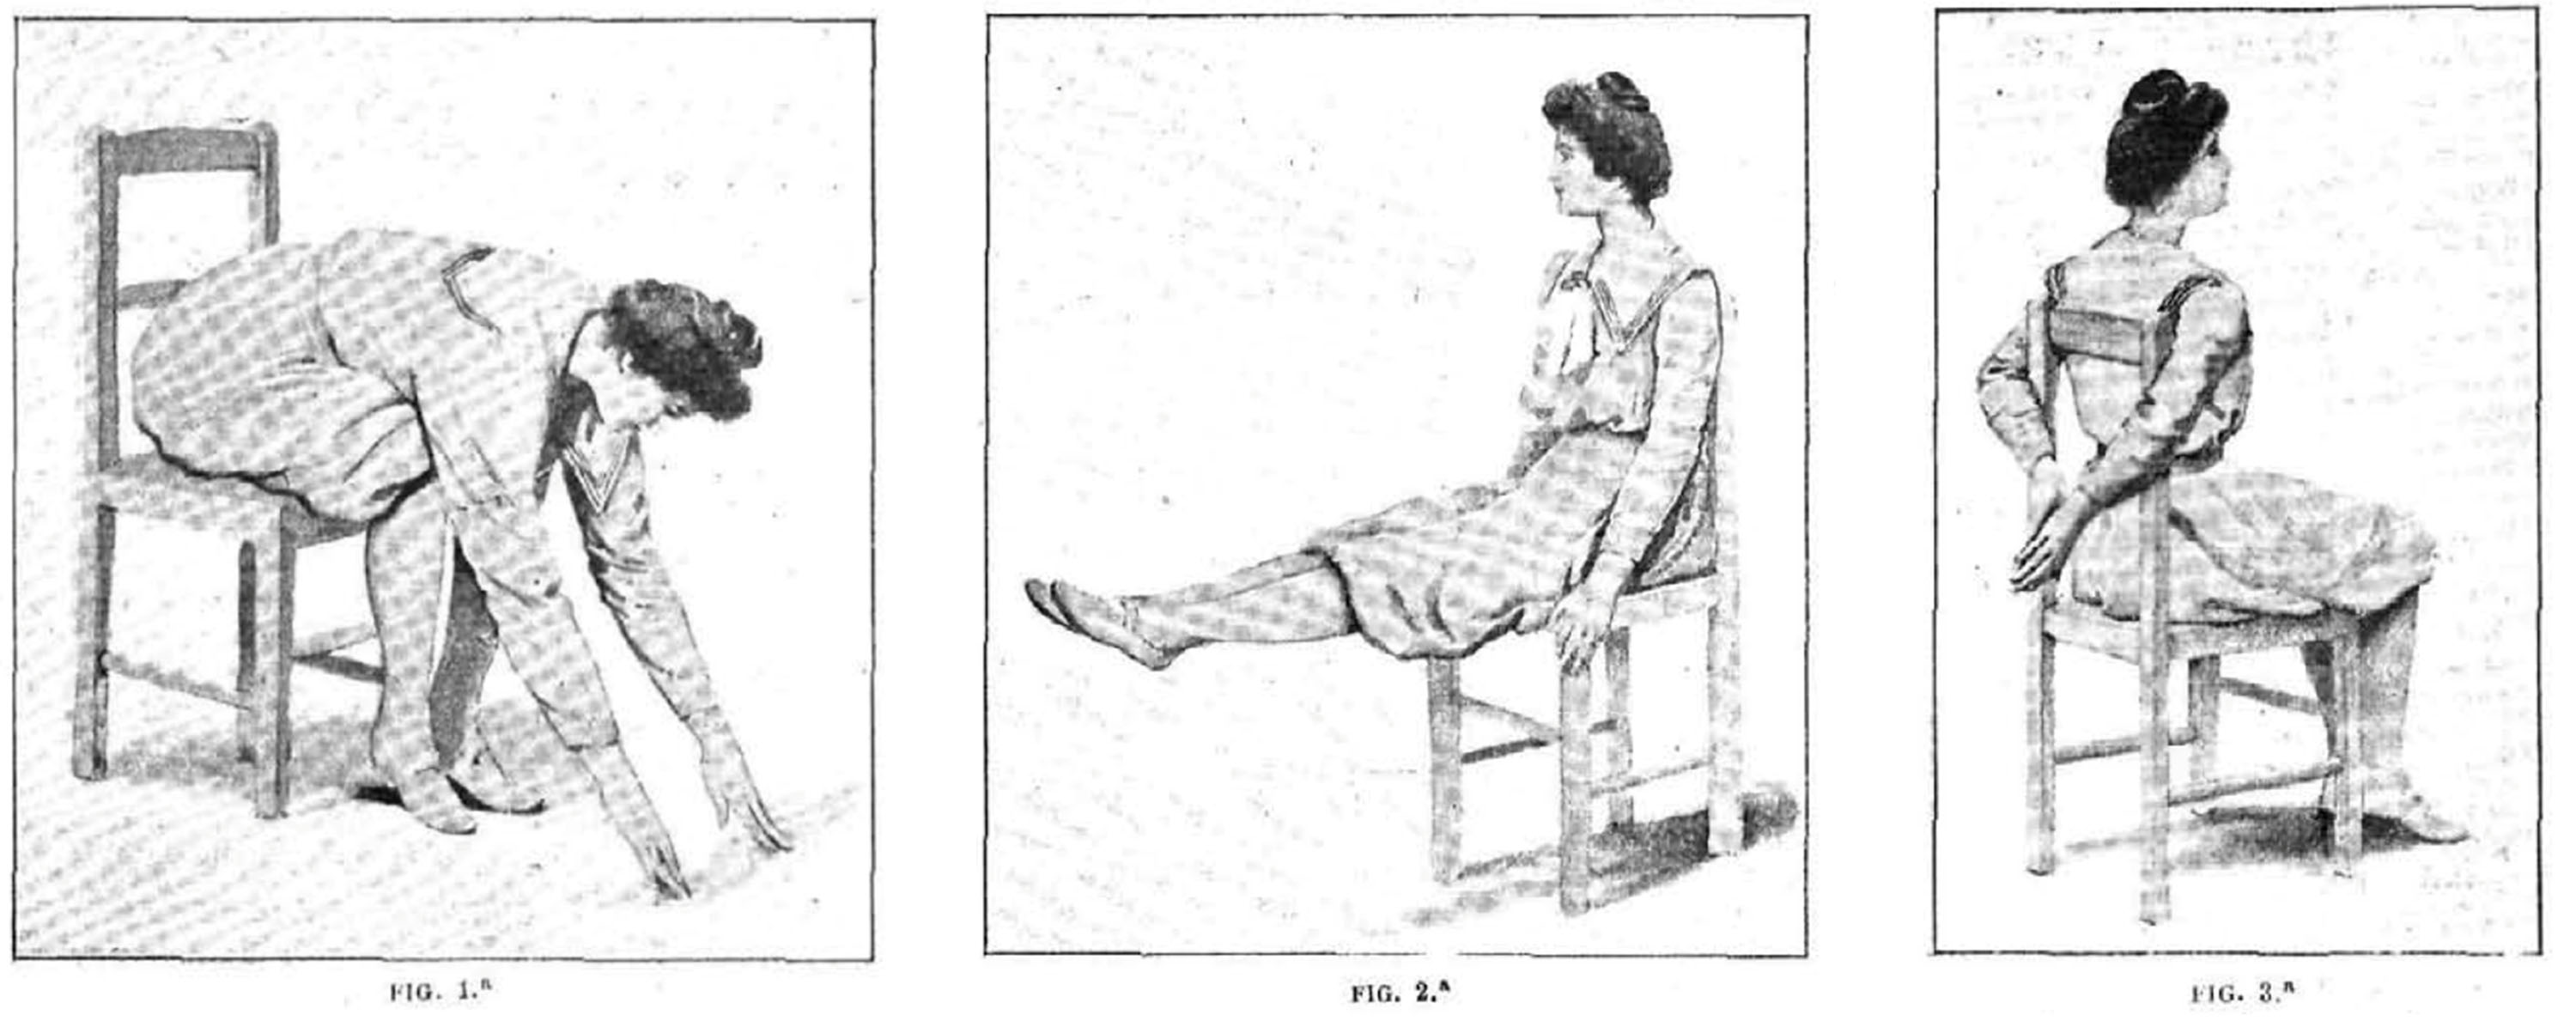 “Gimnasia con una silla de cocina”, Alrededor del Mundo, 1903, 27 de agosto, p. 137